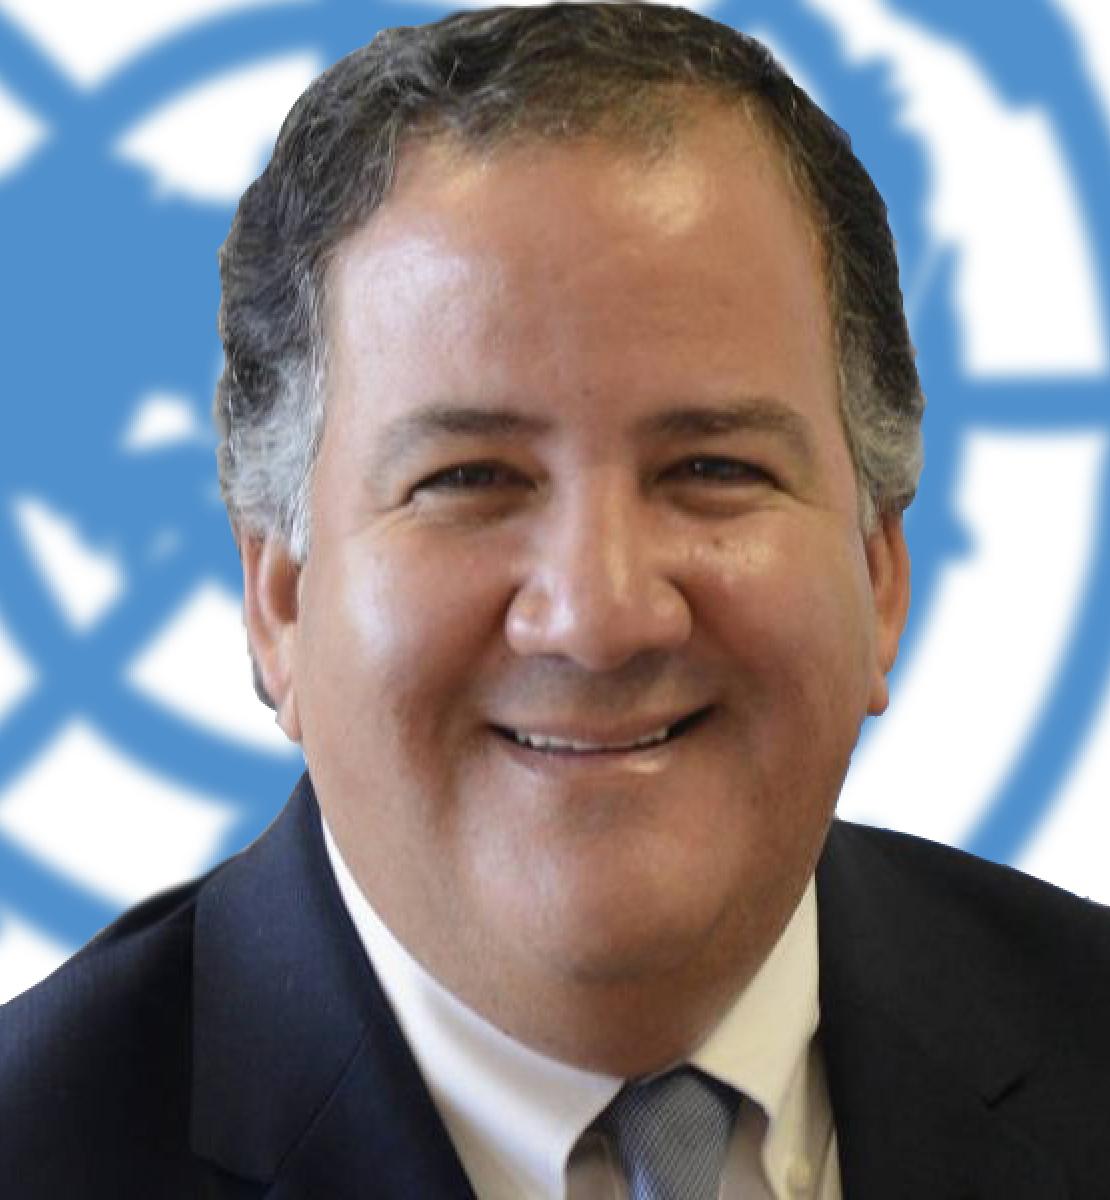 Un hombre sonriente mira directamente a la cámara con el logotipo de las Naciones Unidas de fondo.